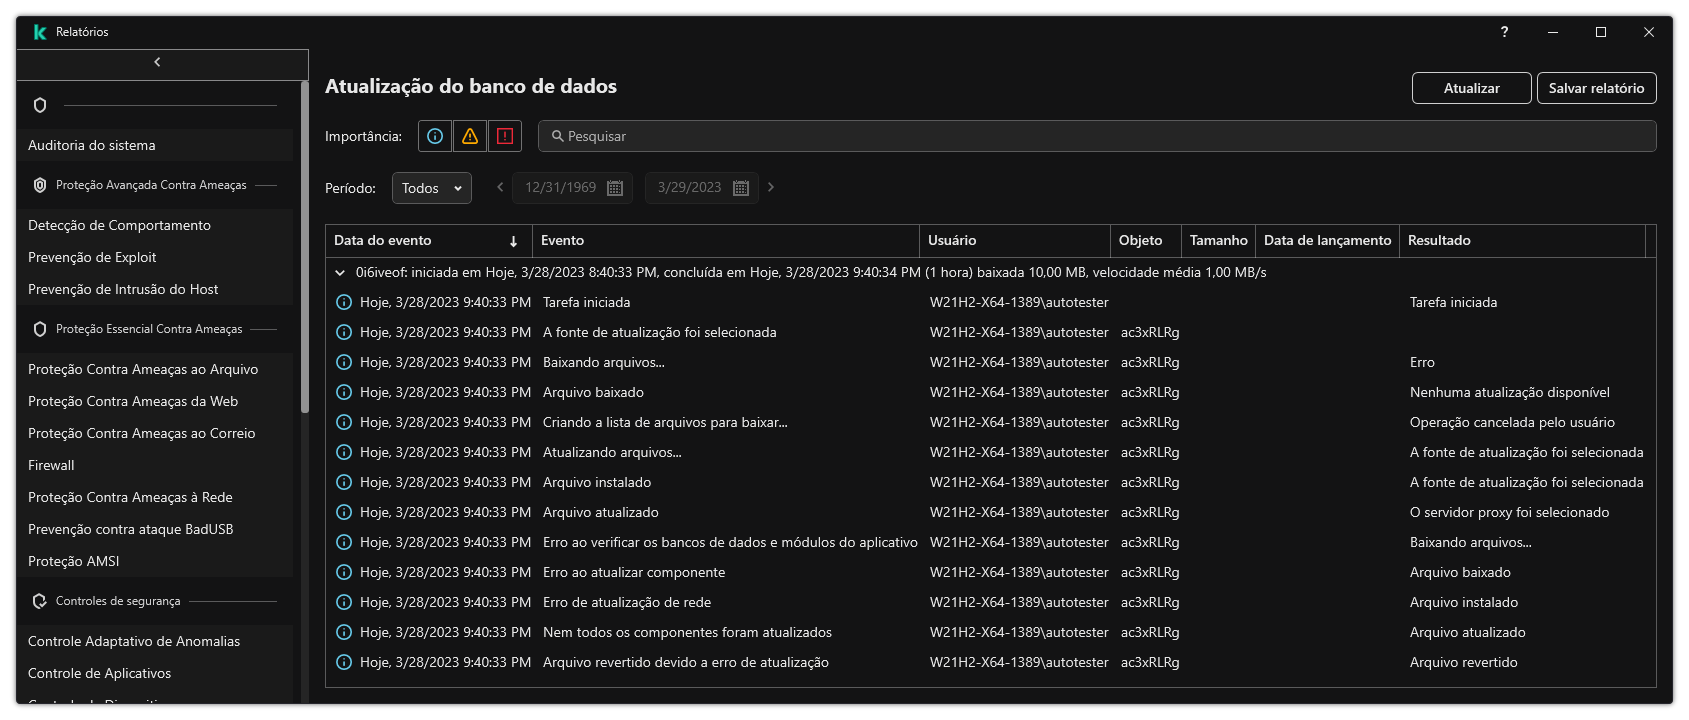 Uma janela com a lista de eventos no relatório. O usuário pode filtrar/classificar os eventos e salvar os relatórios em um arquivo.